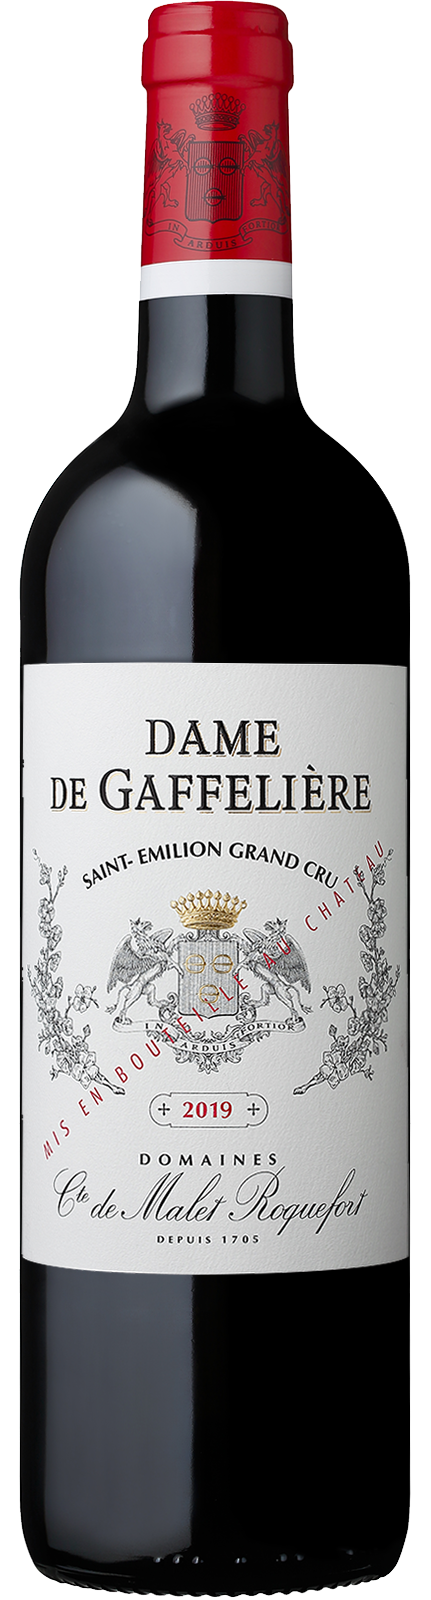 Dame de Gaffelière - Saint Emilion Grand Cru - Vin des Domaines Comte de Malet Roquefort